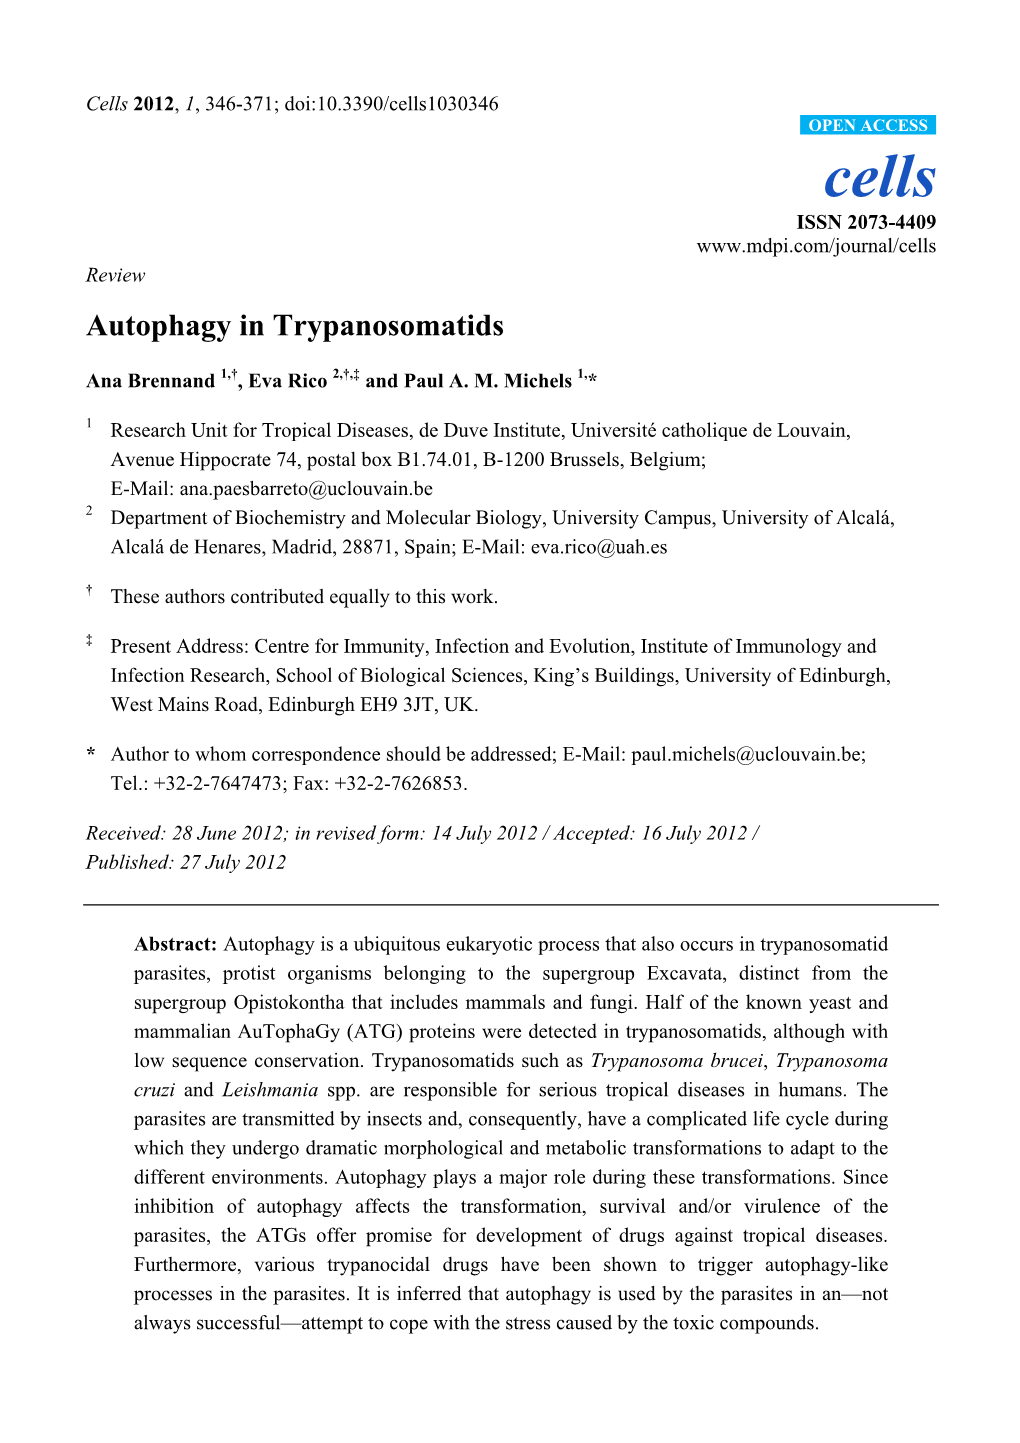 Autophagy in Trypanosomatids